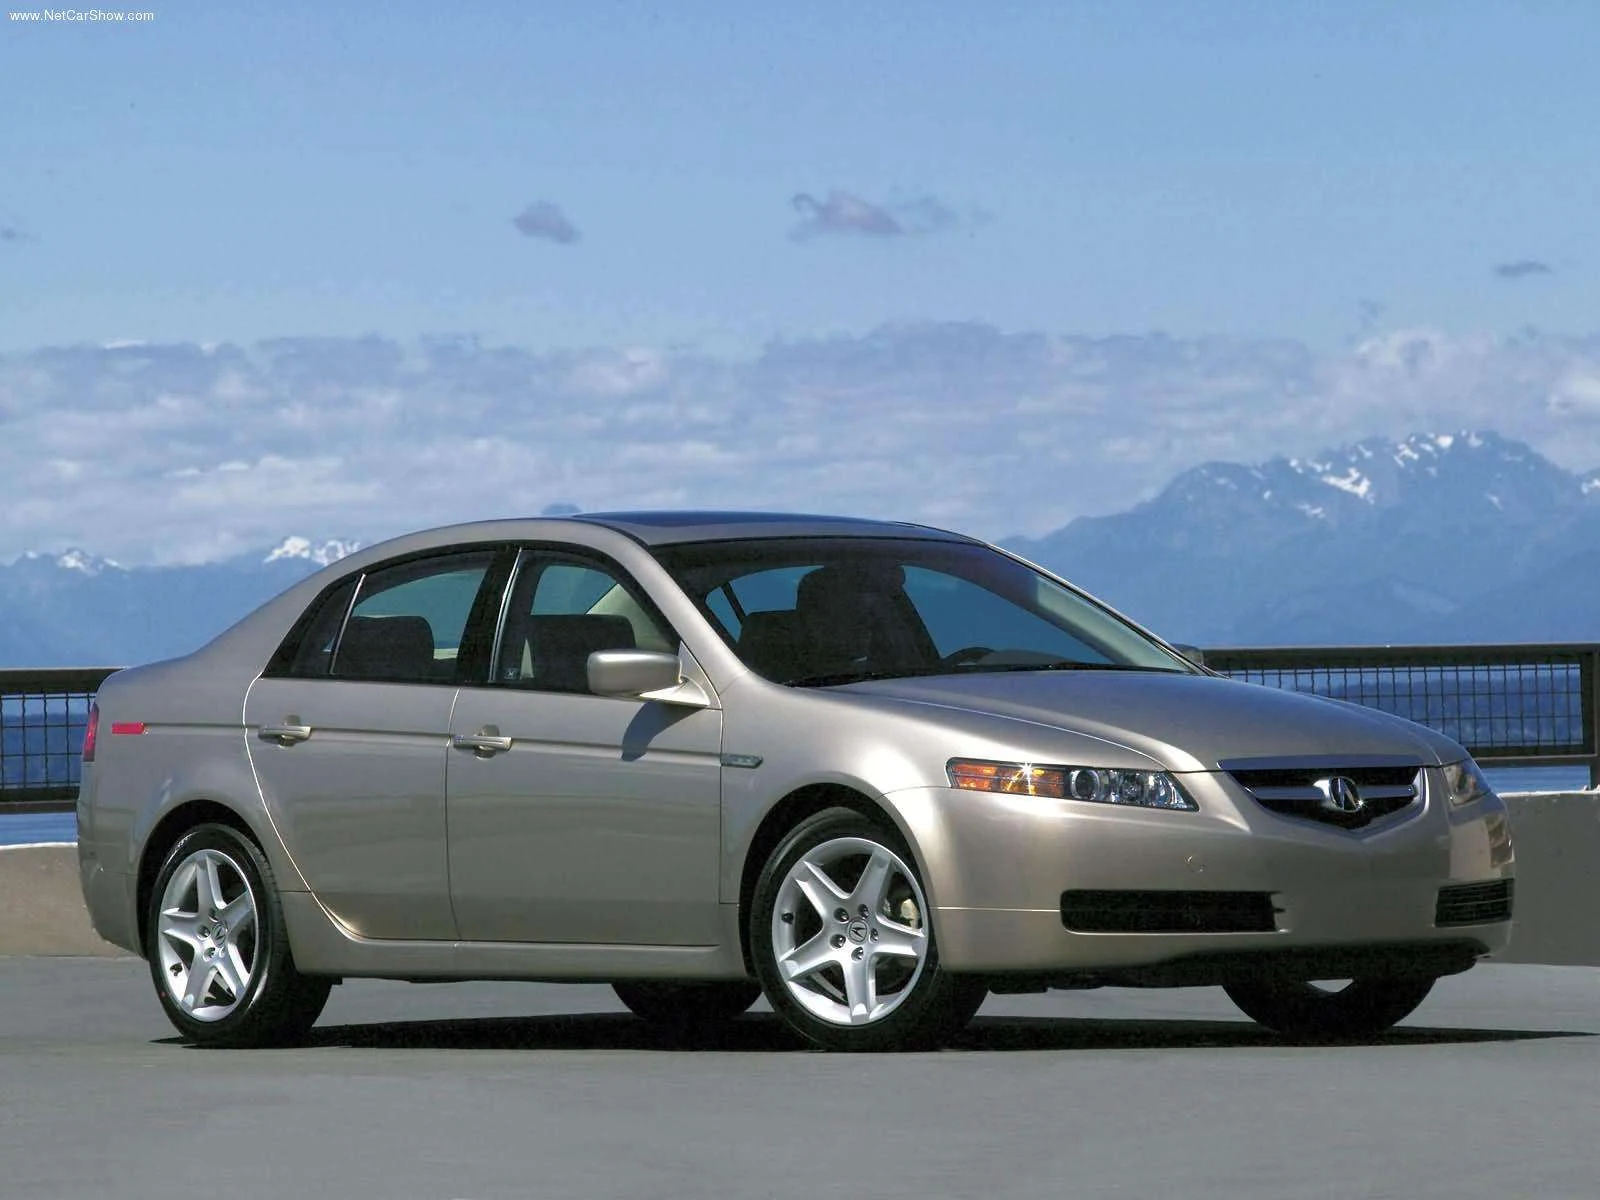 Hình ảnh xe ô tô Acura 3.2 TL 2004 & nội ngoại thất